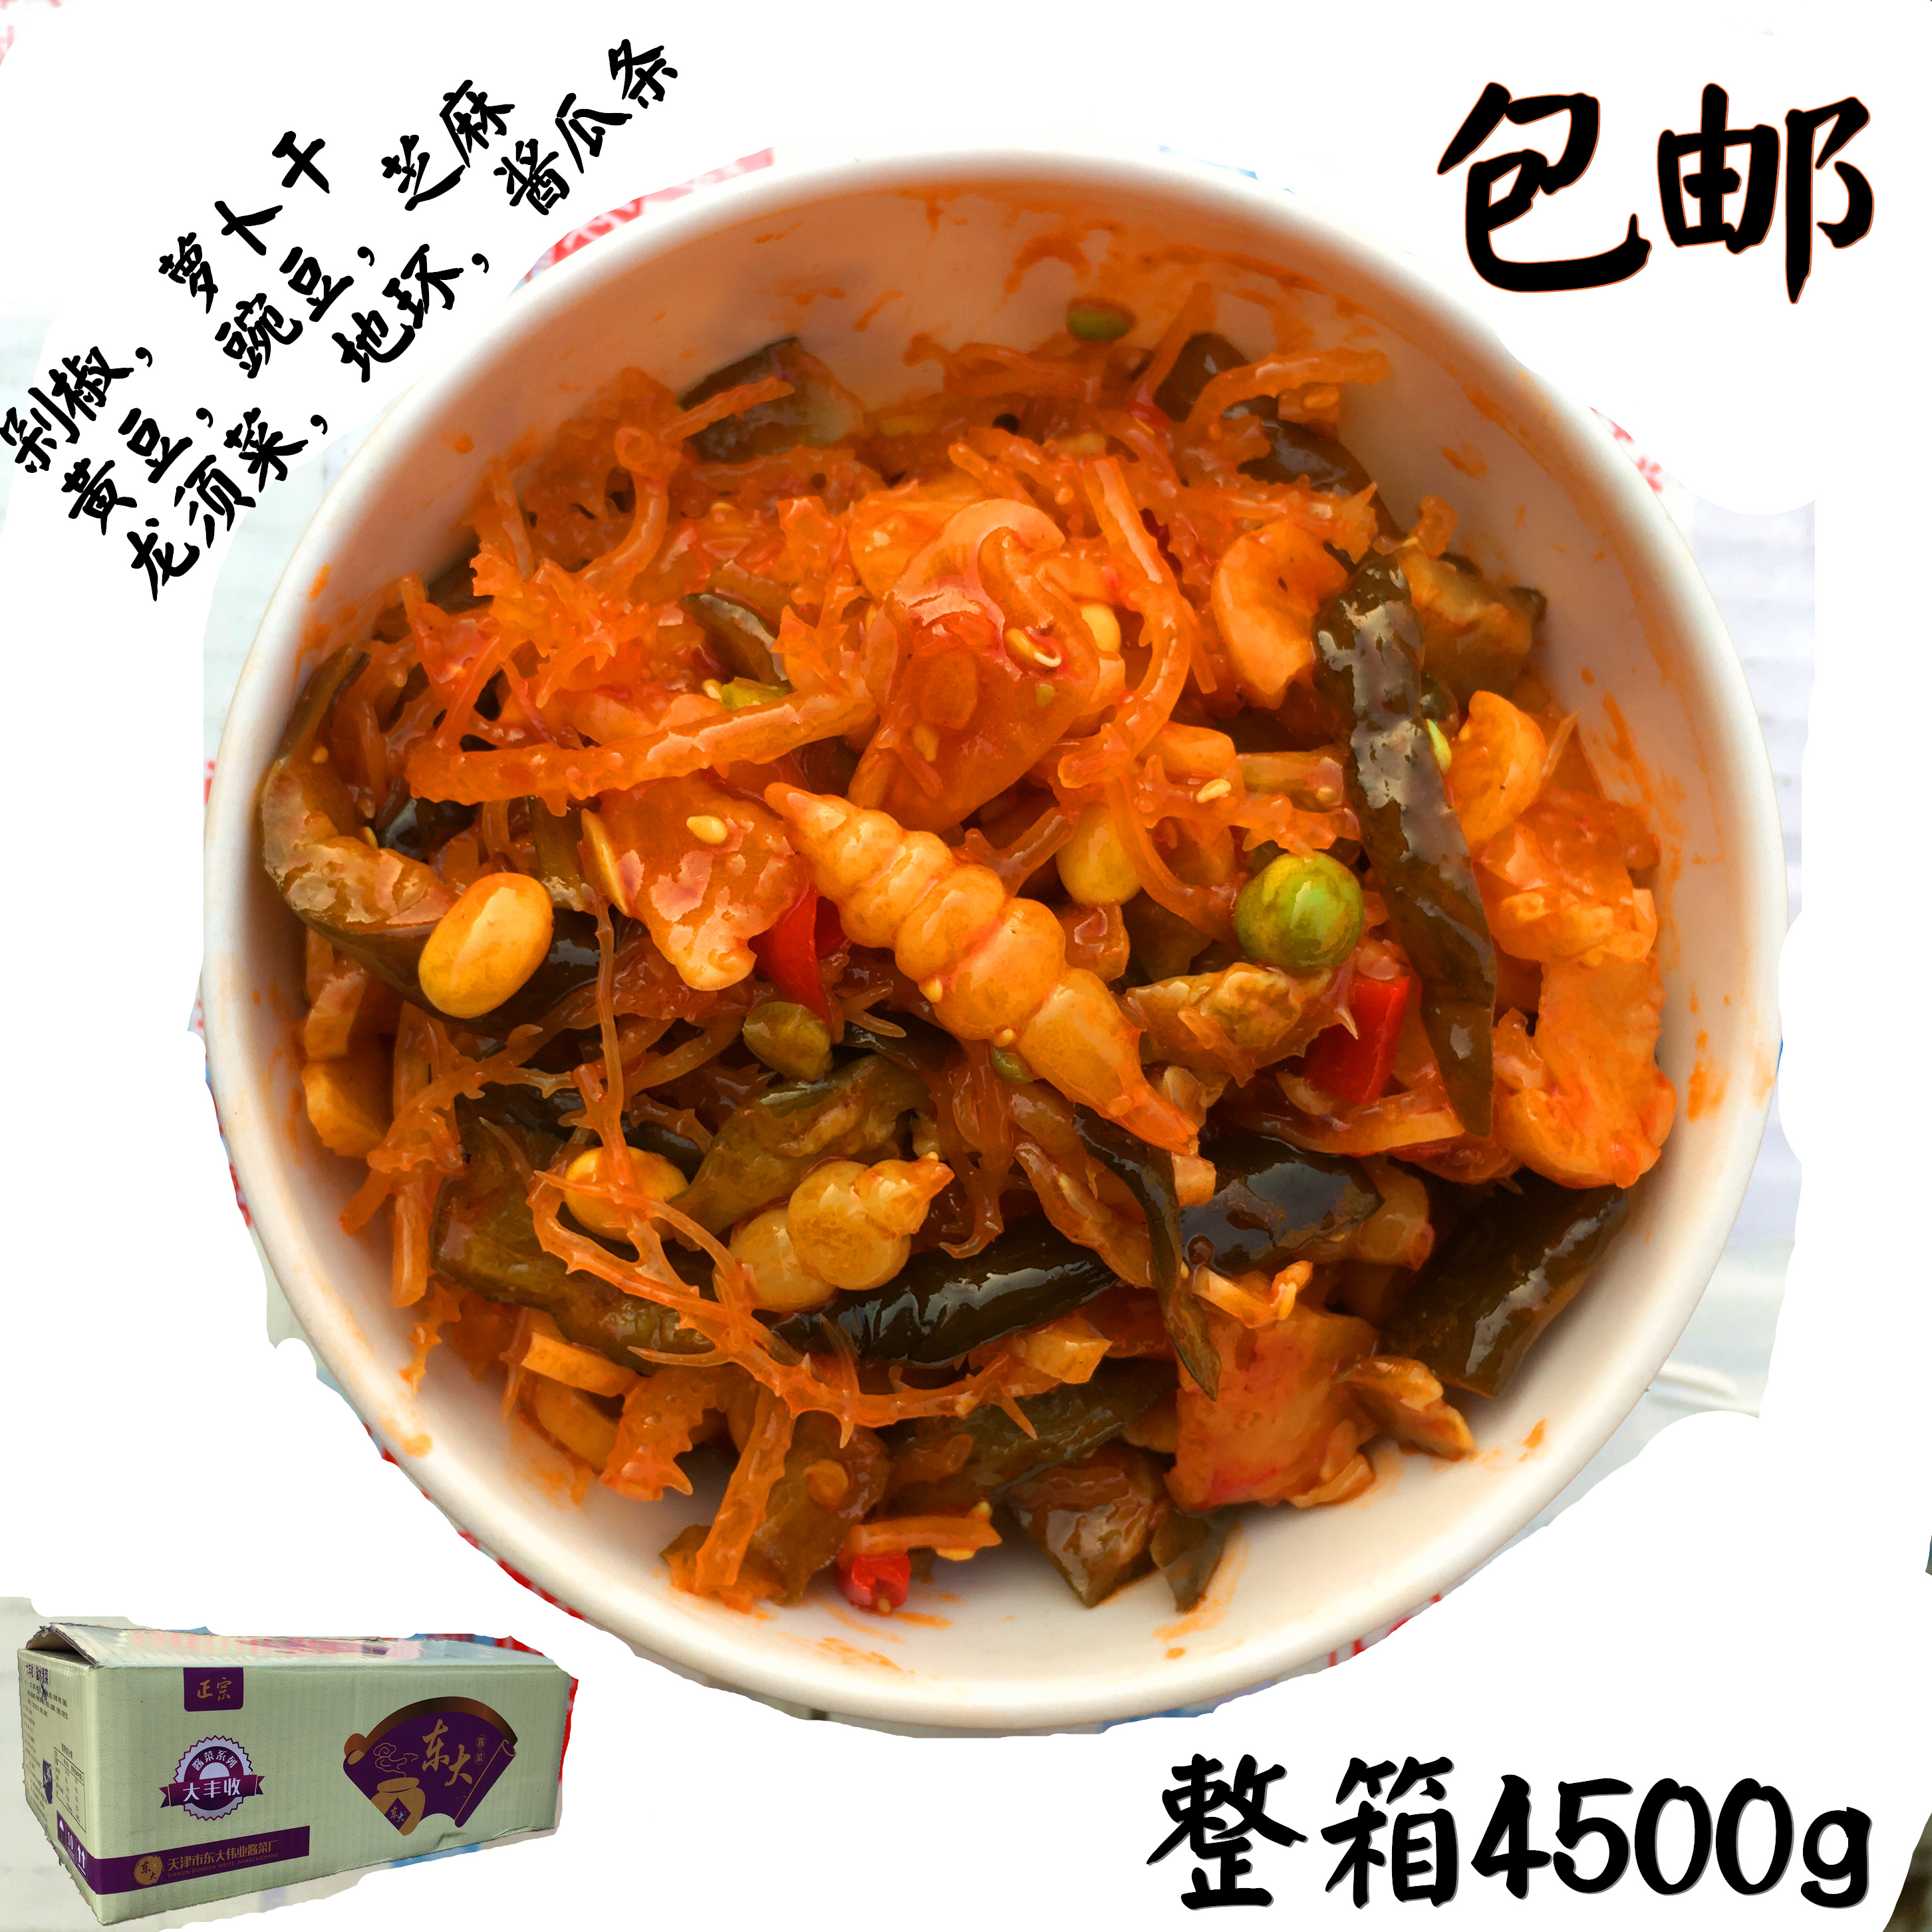 朝鲜咸菜（桔梗 也叫狗宝）朝鲜大冷面 辣白菜 - 日韩风味 - 美食街 新加坡狮城论坛